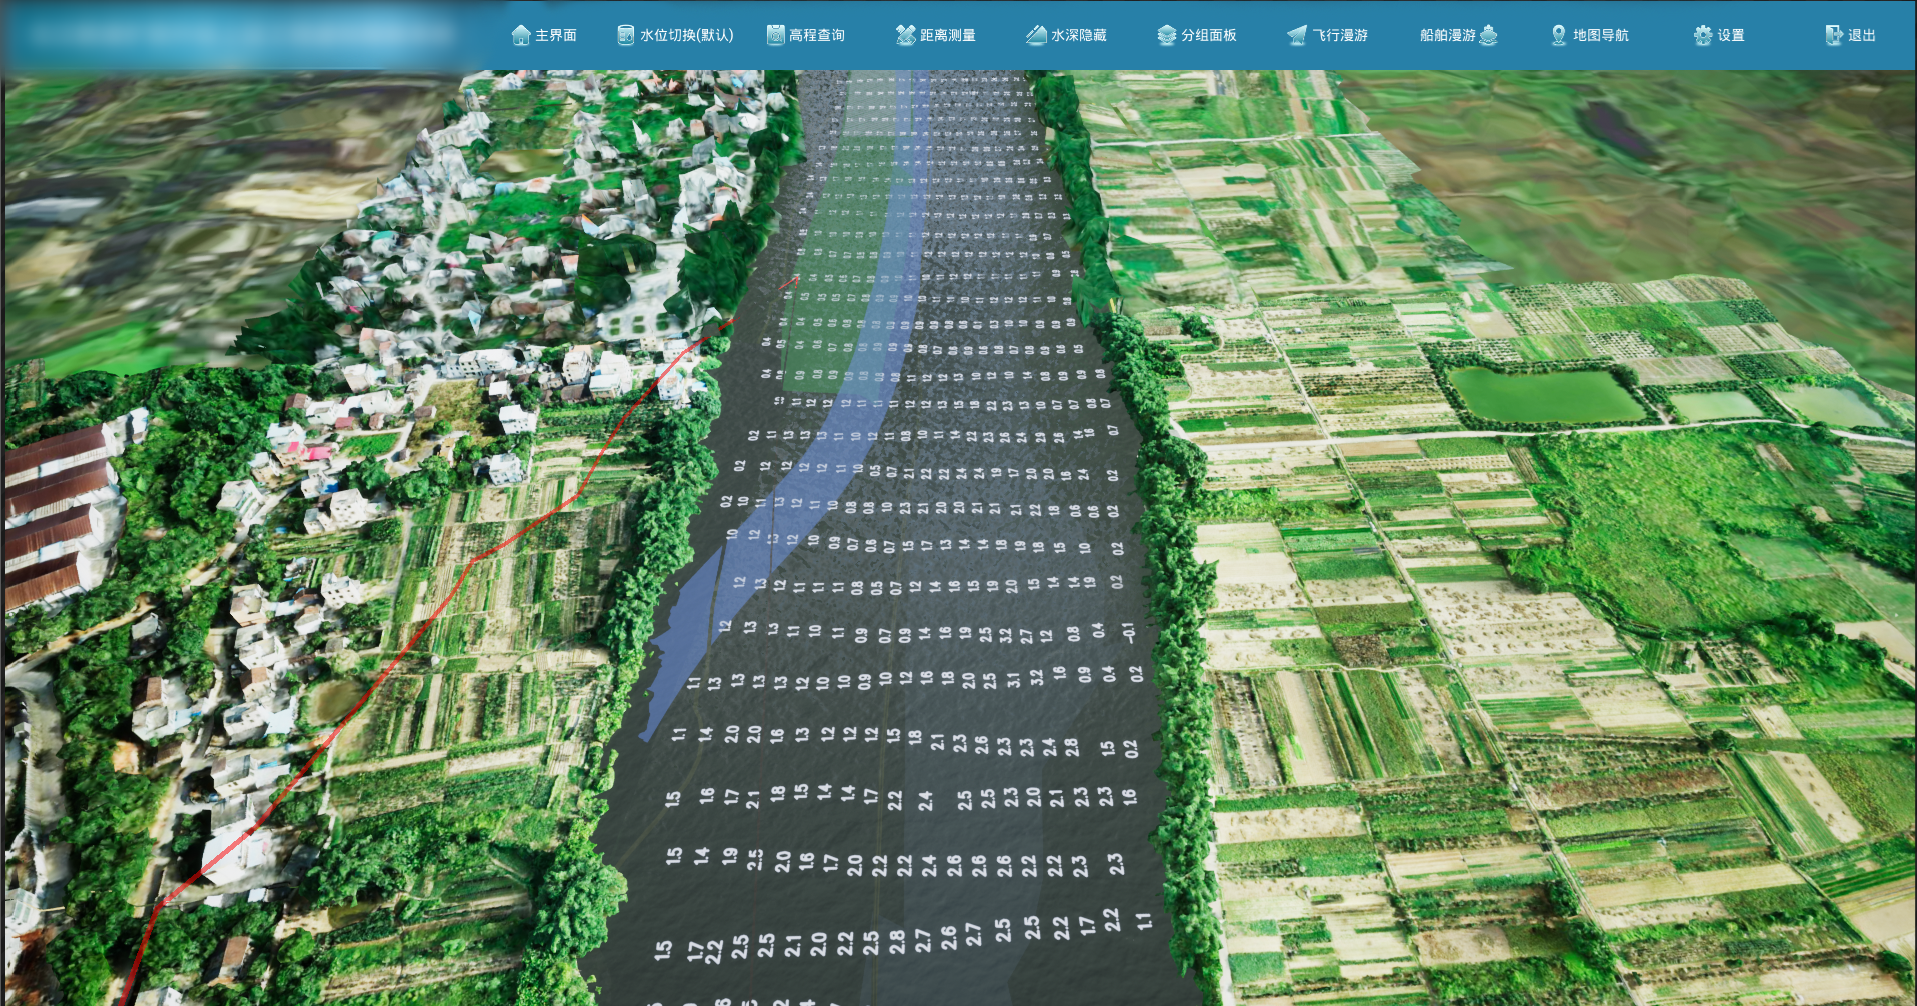 北疆航道-航道工程虚拟踏勘系统-水深显示